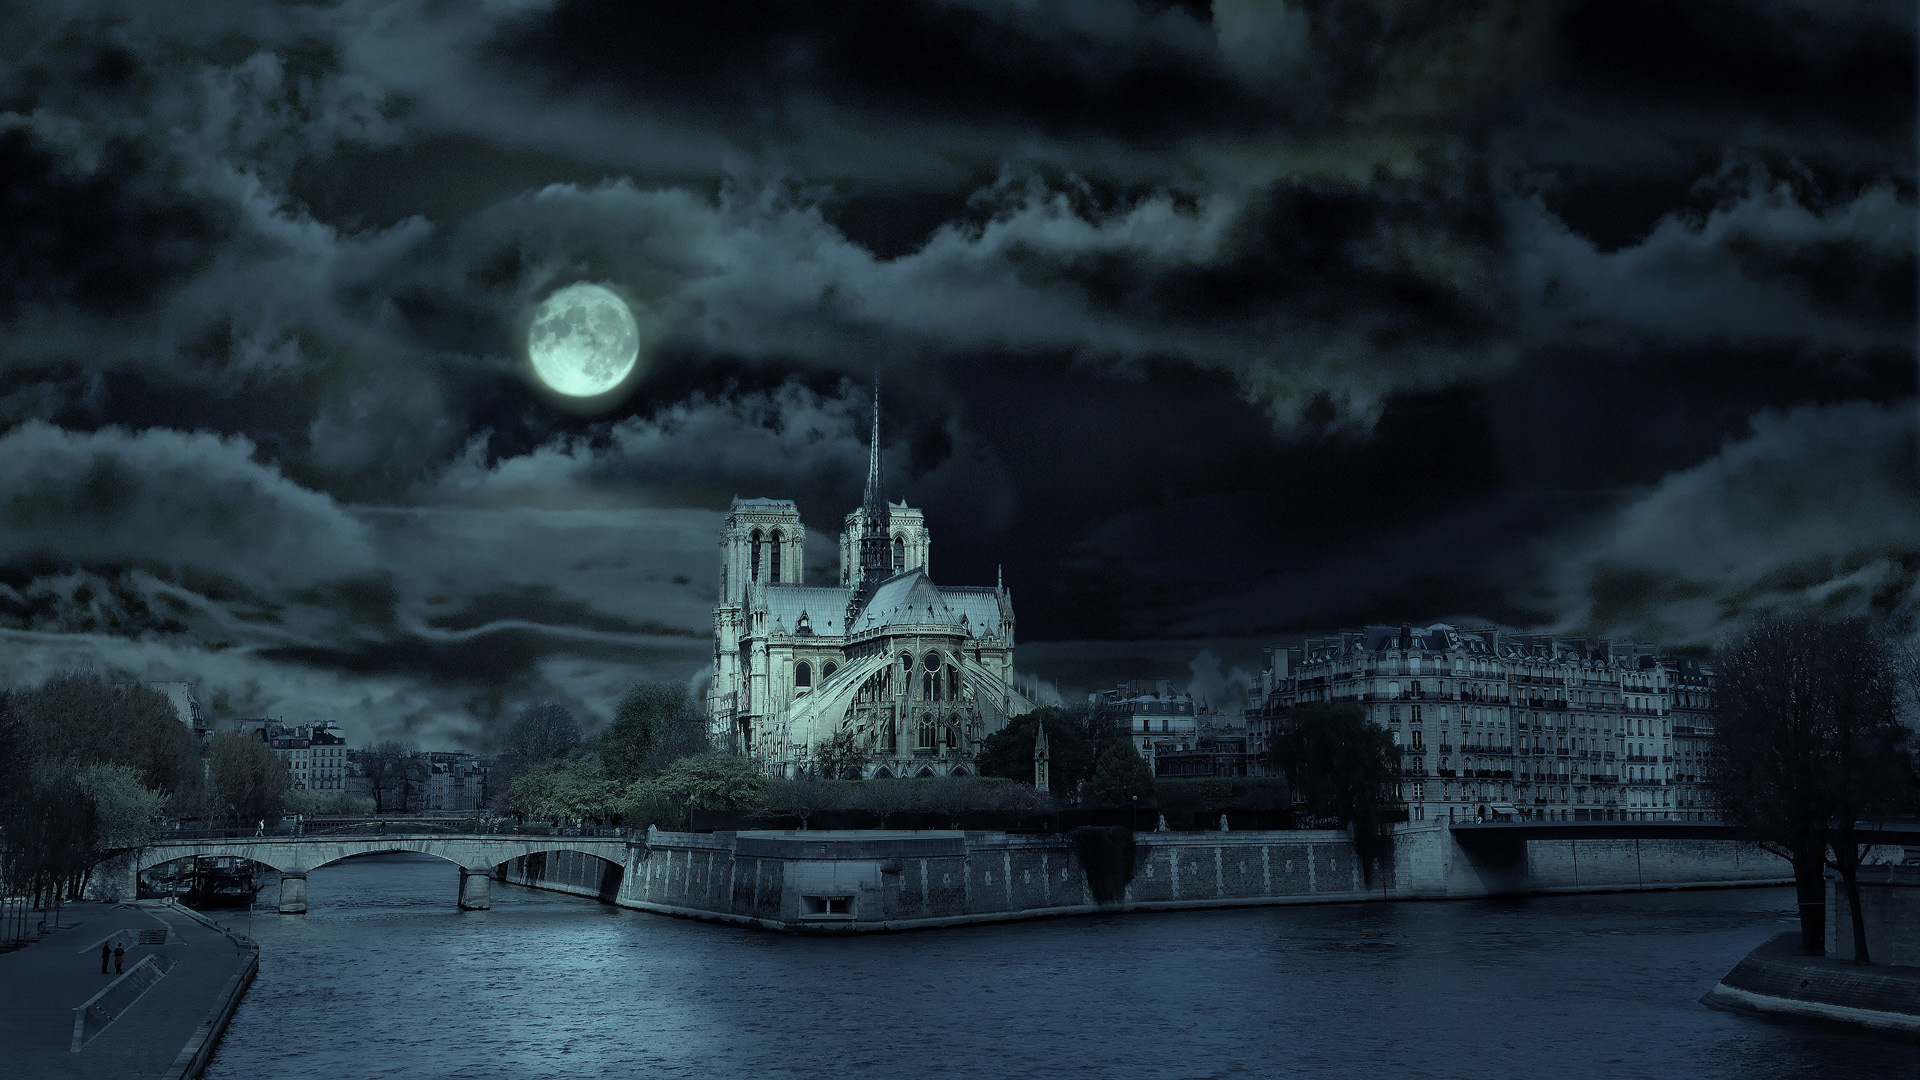 Popular Notre Dame De Paris Image for Phone